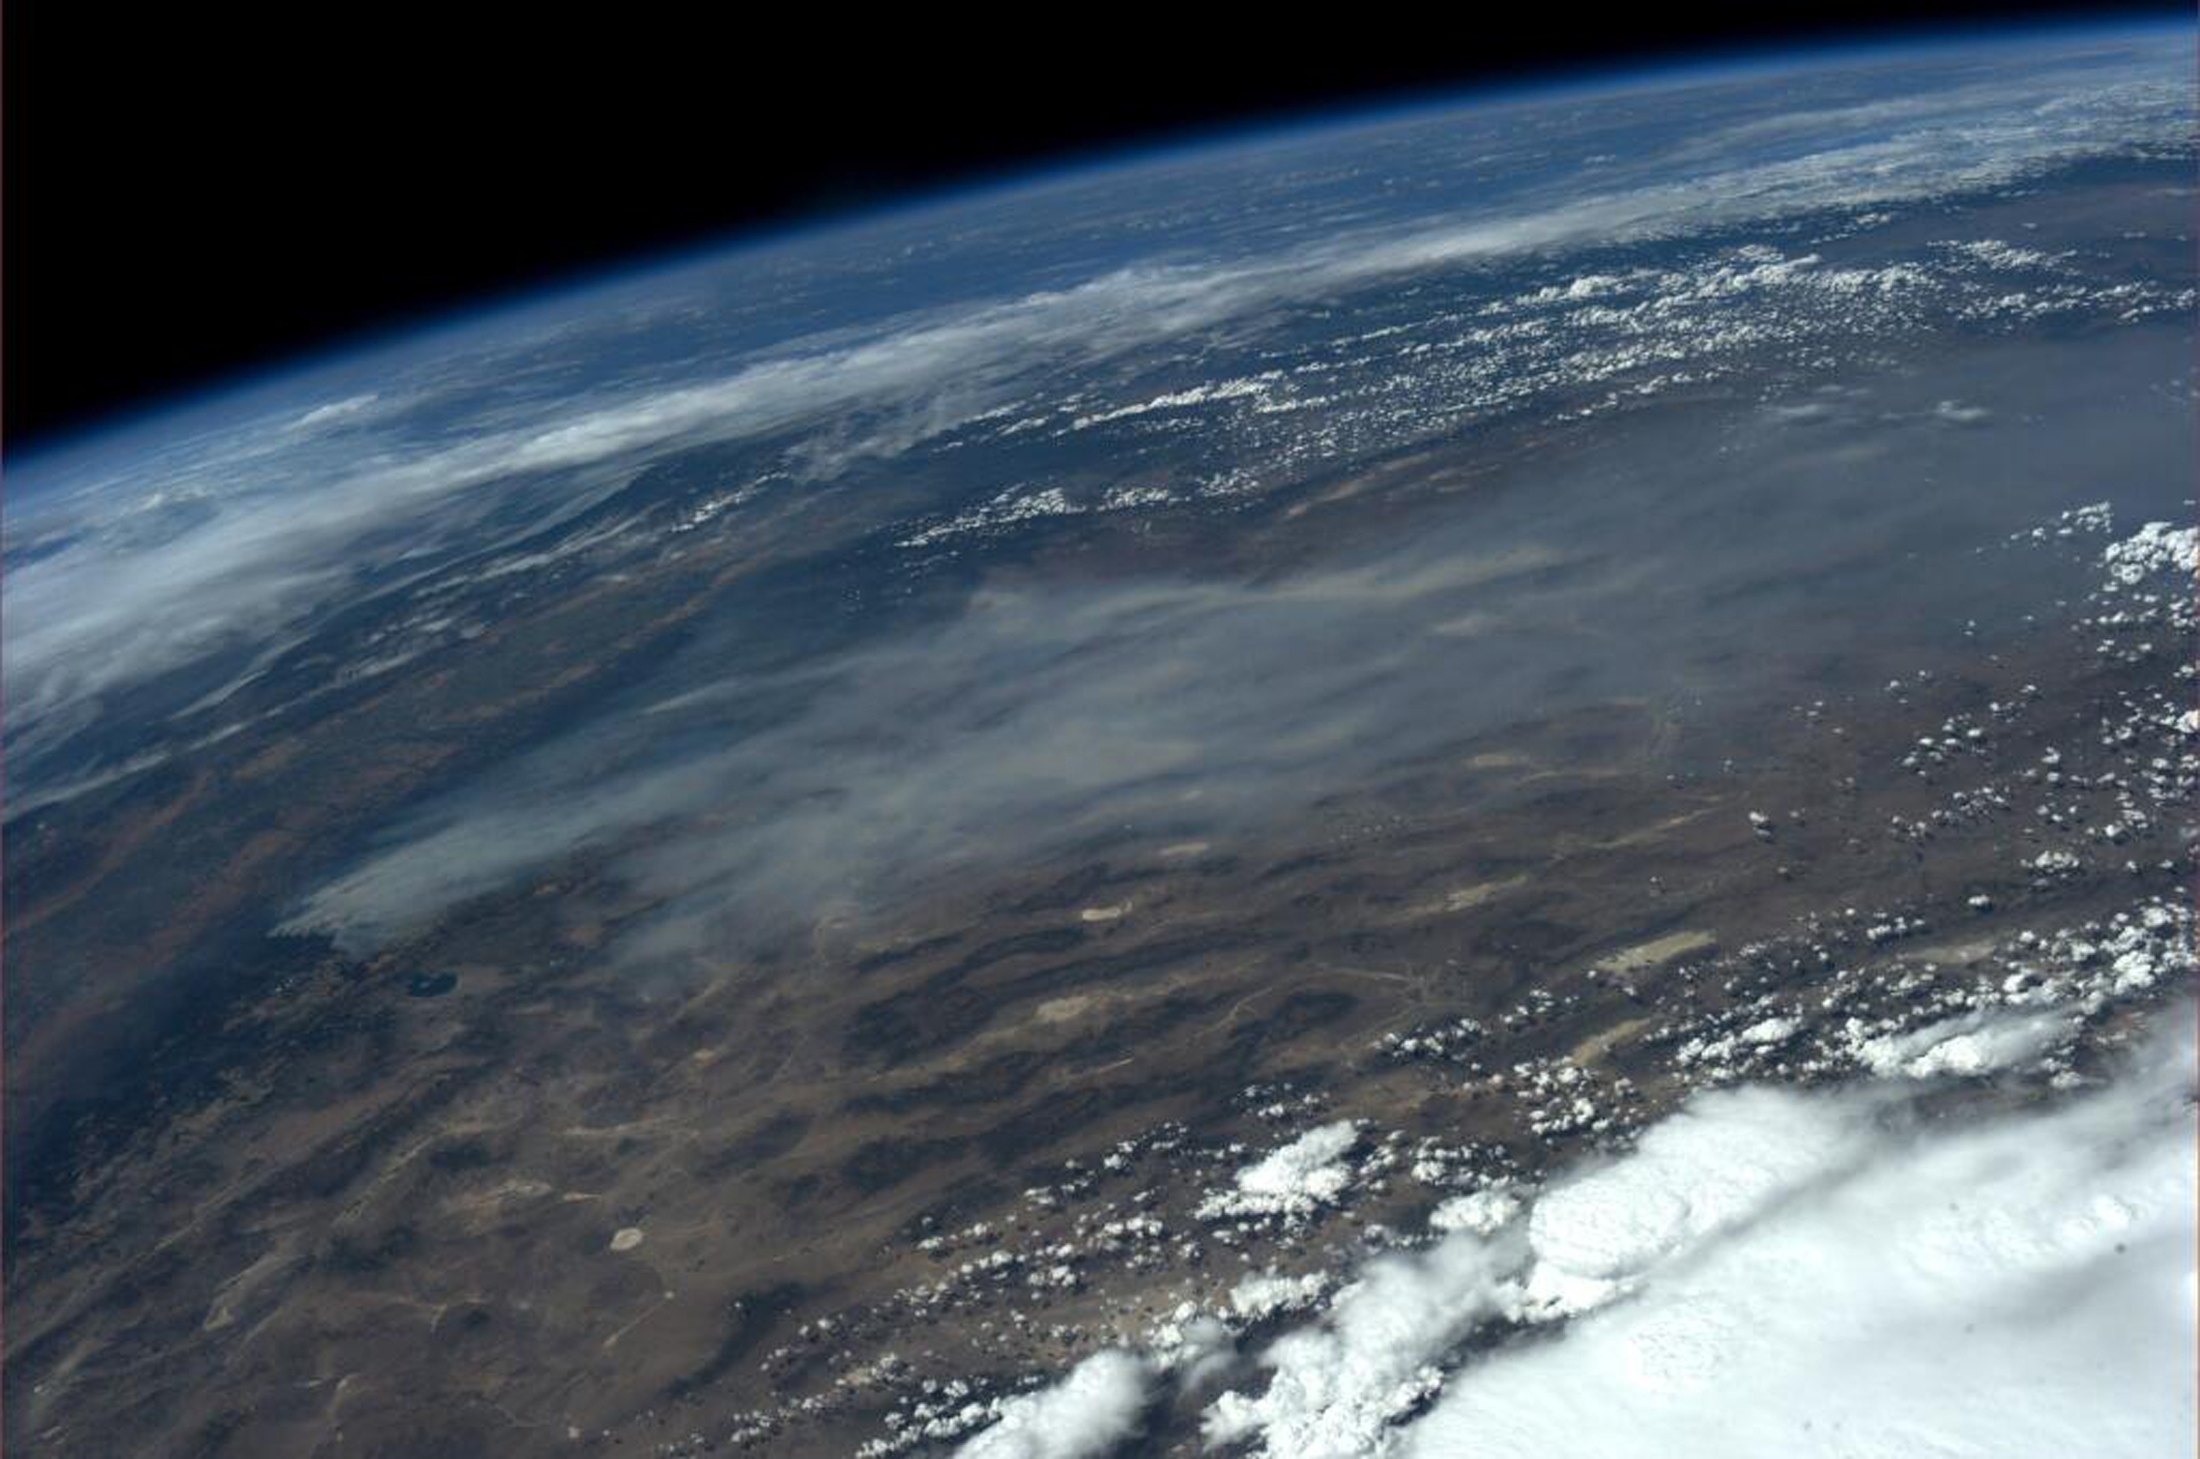 Η απίστευτη φωτογραφία που τράβηκε από το Διεθνή Διαστημικό Σταθμό η αστροναύτης Karen L. Nyberg - ΦΩΤΟΓΡΑΦΙΑ REUTERS